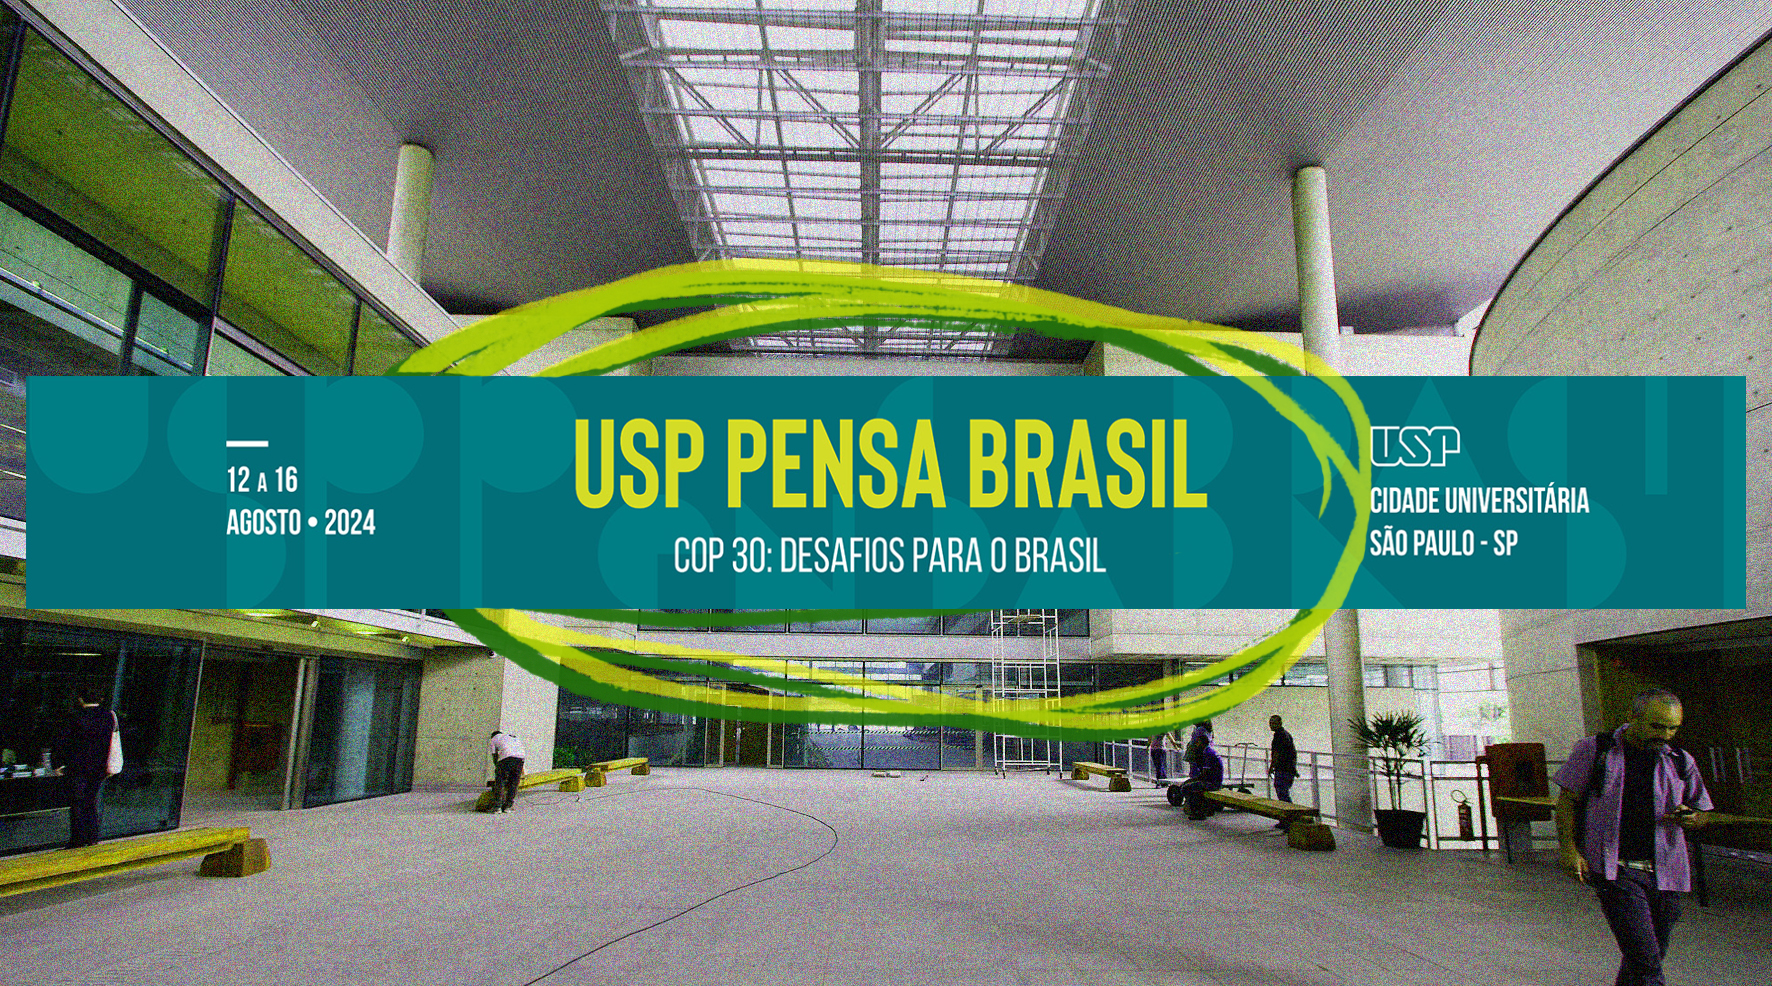 Fotomontagem feita por Brenda Kapp. Reprodução: USP/Marcos Santos e USP Pensa Brasil